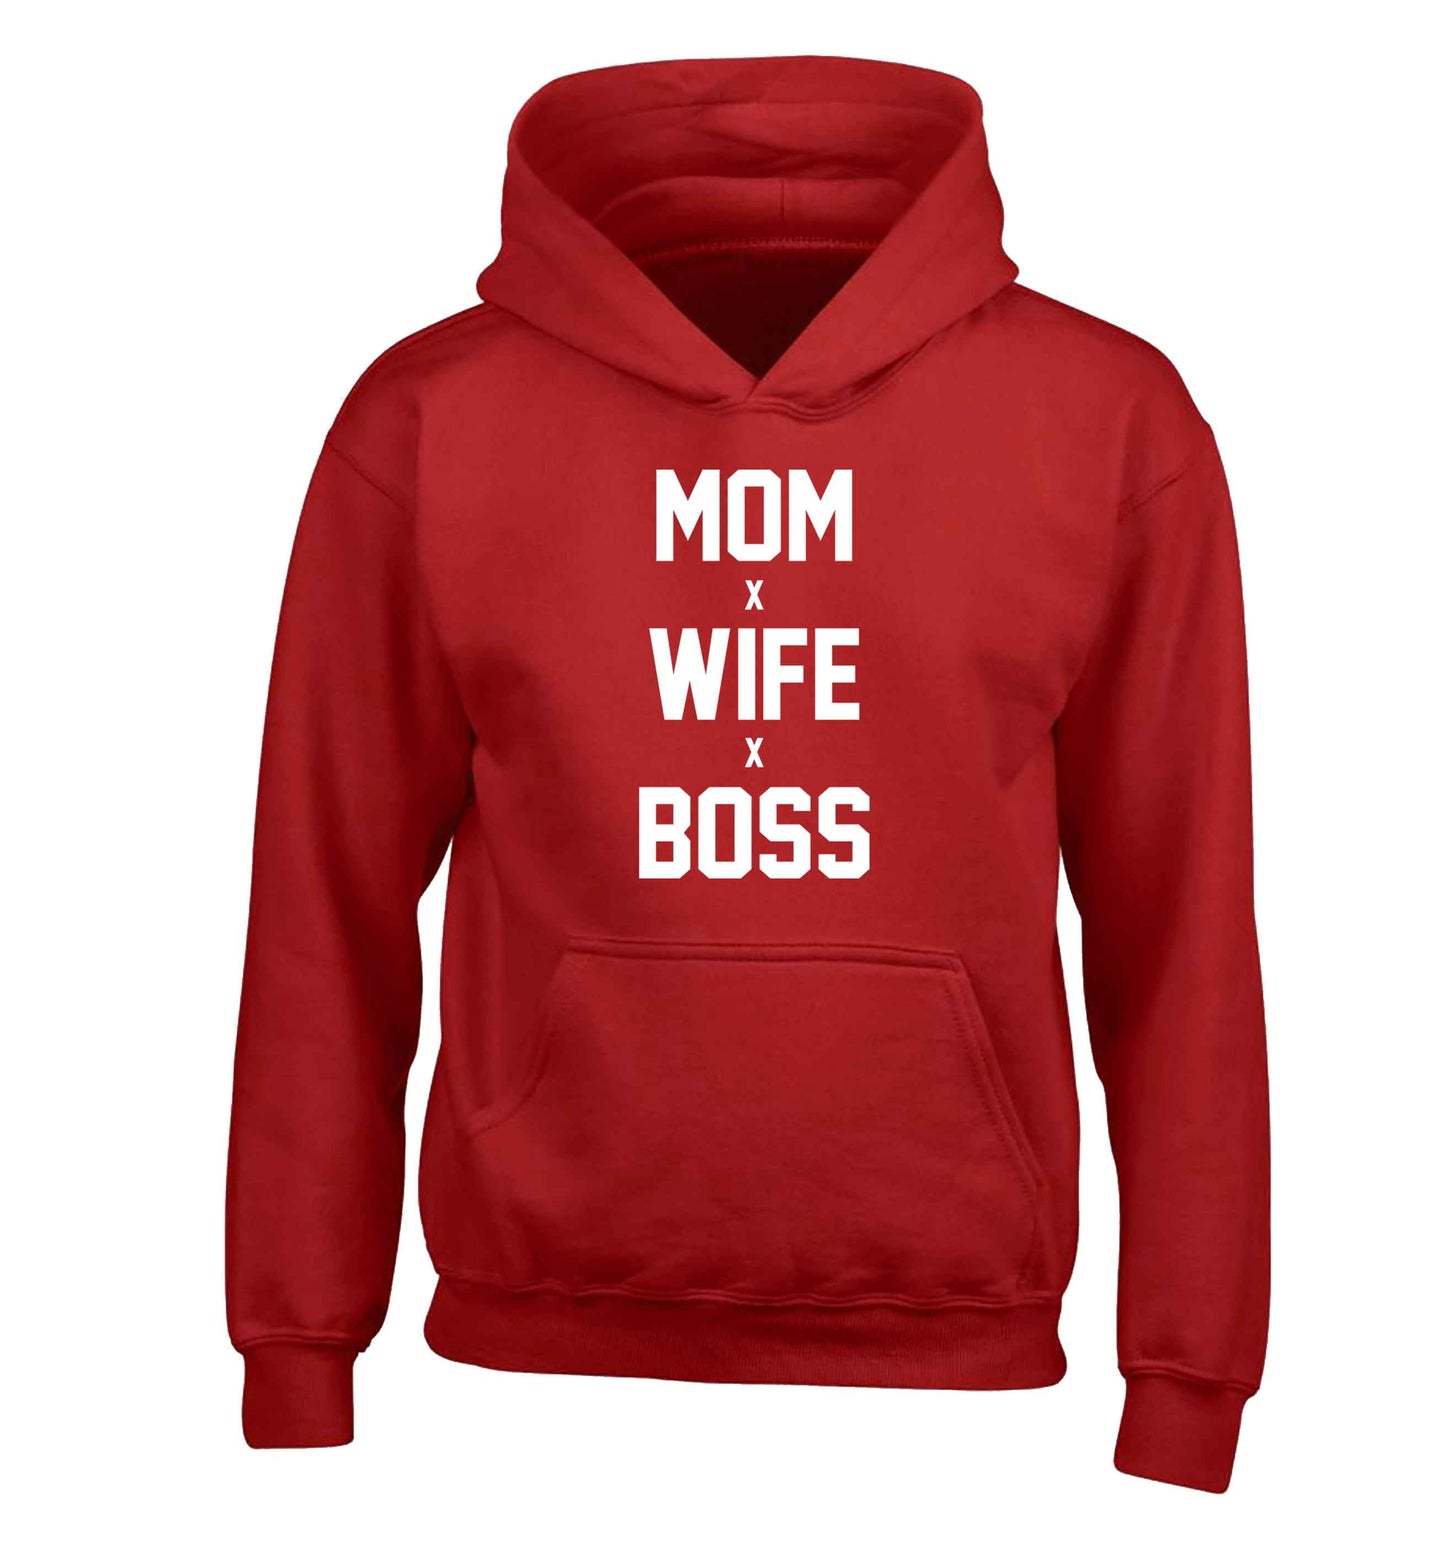 Mum wife boss children's red hoodie 12-13 Years